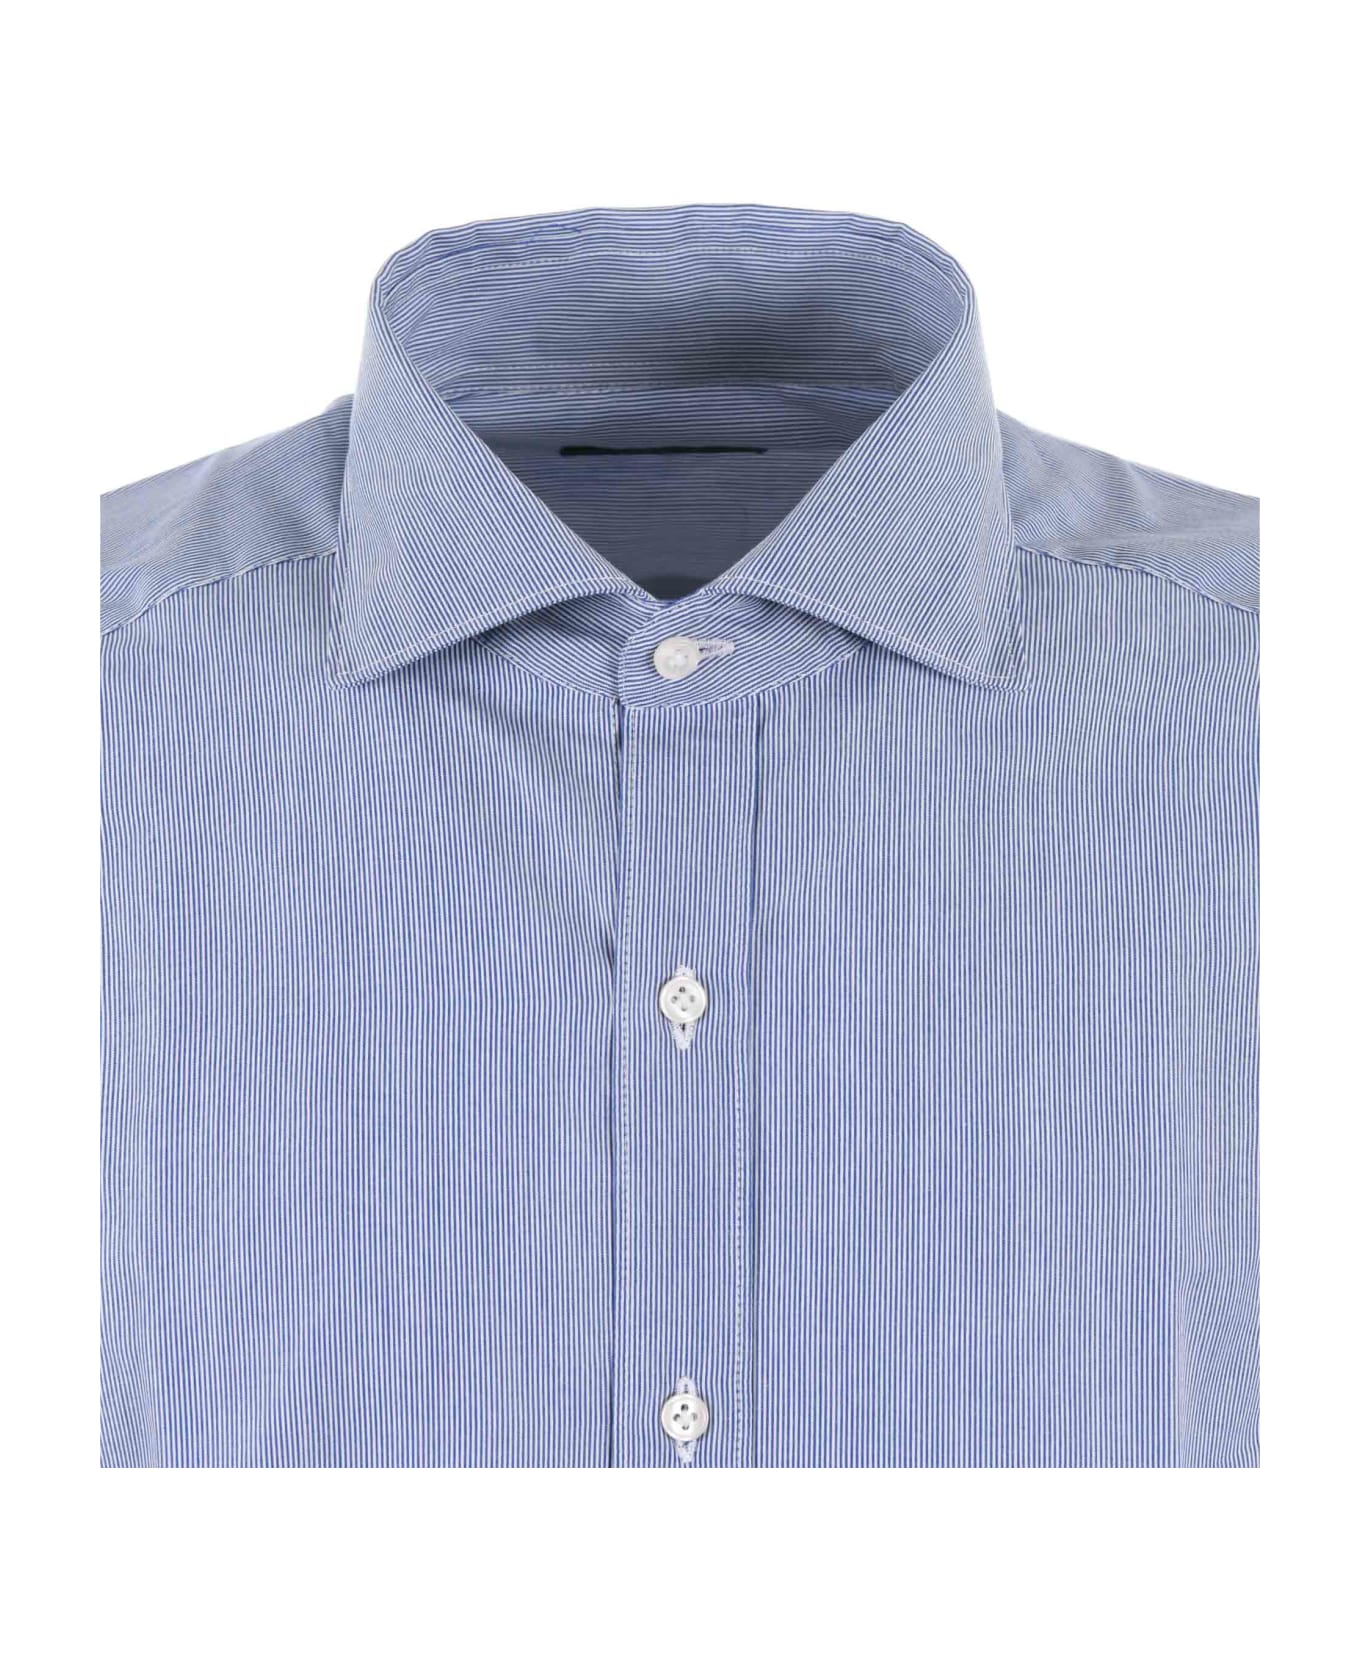 Fay Shirt - Bianco/blu